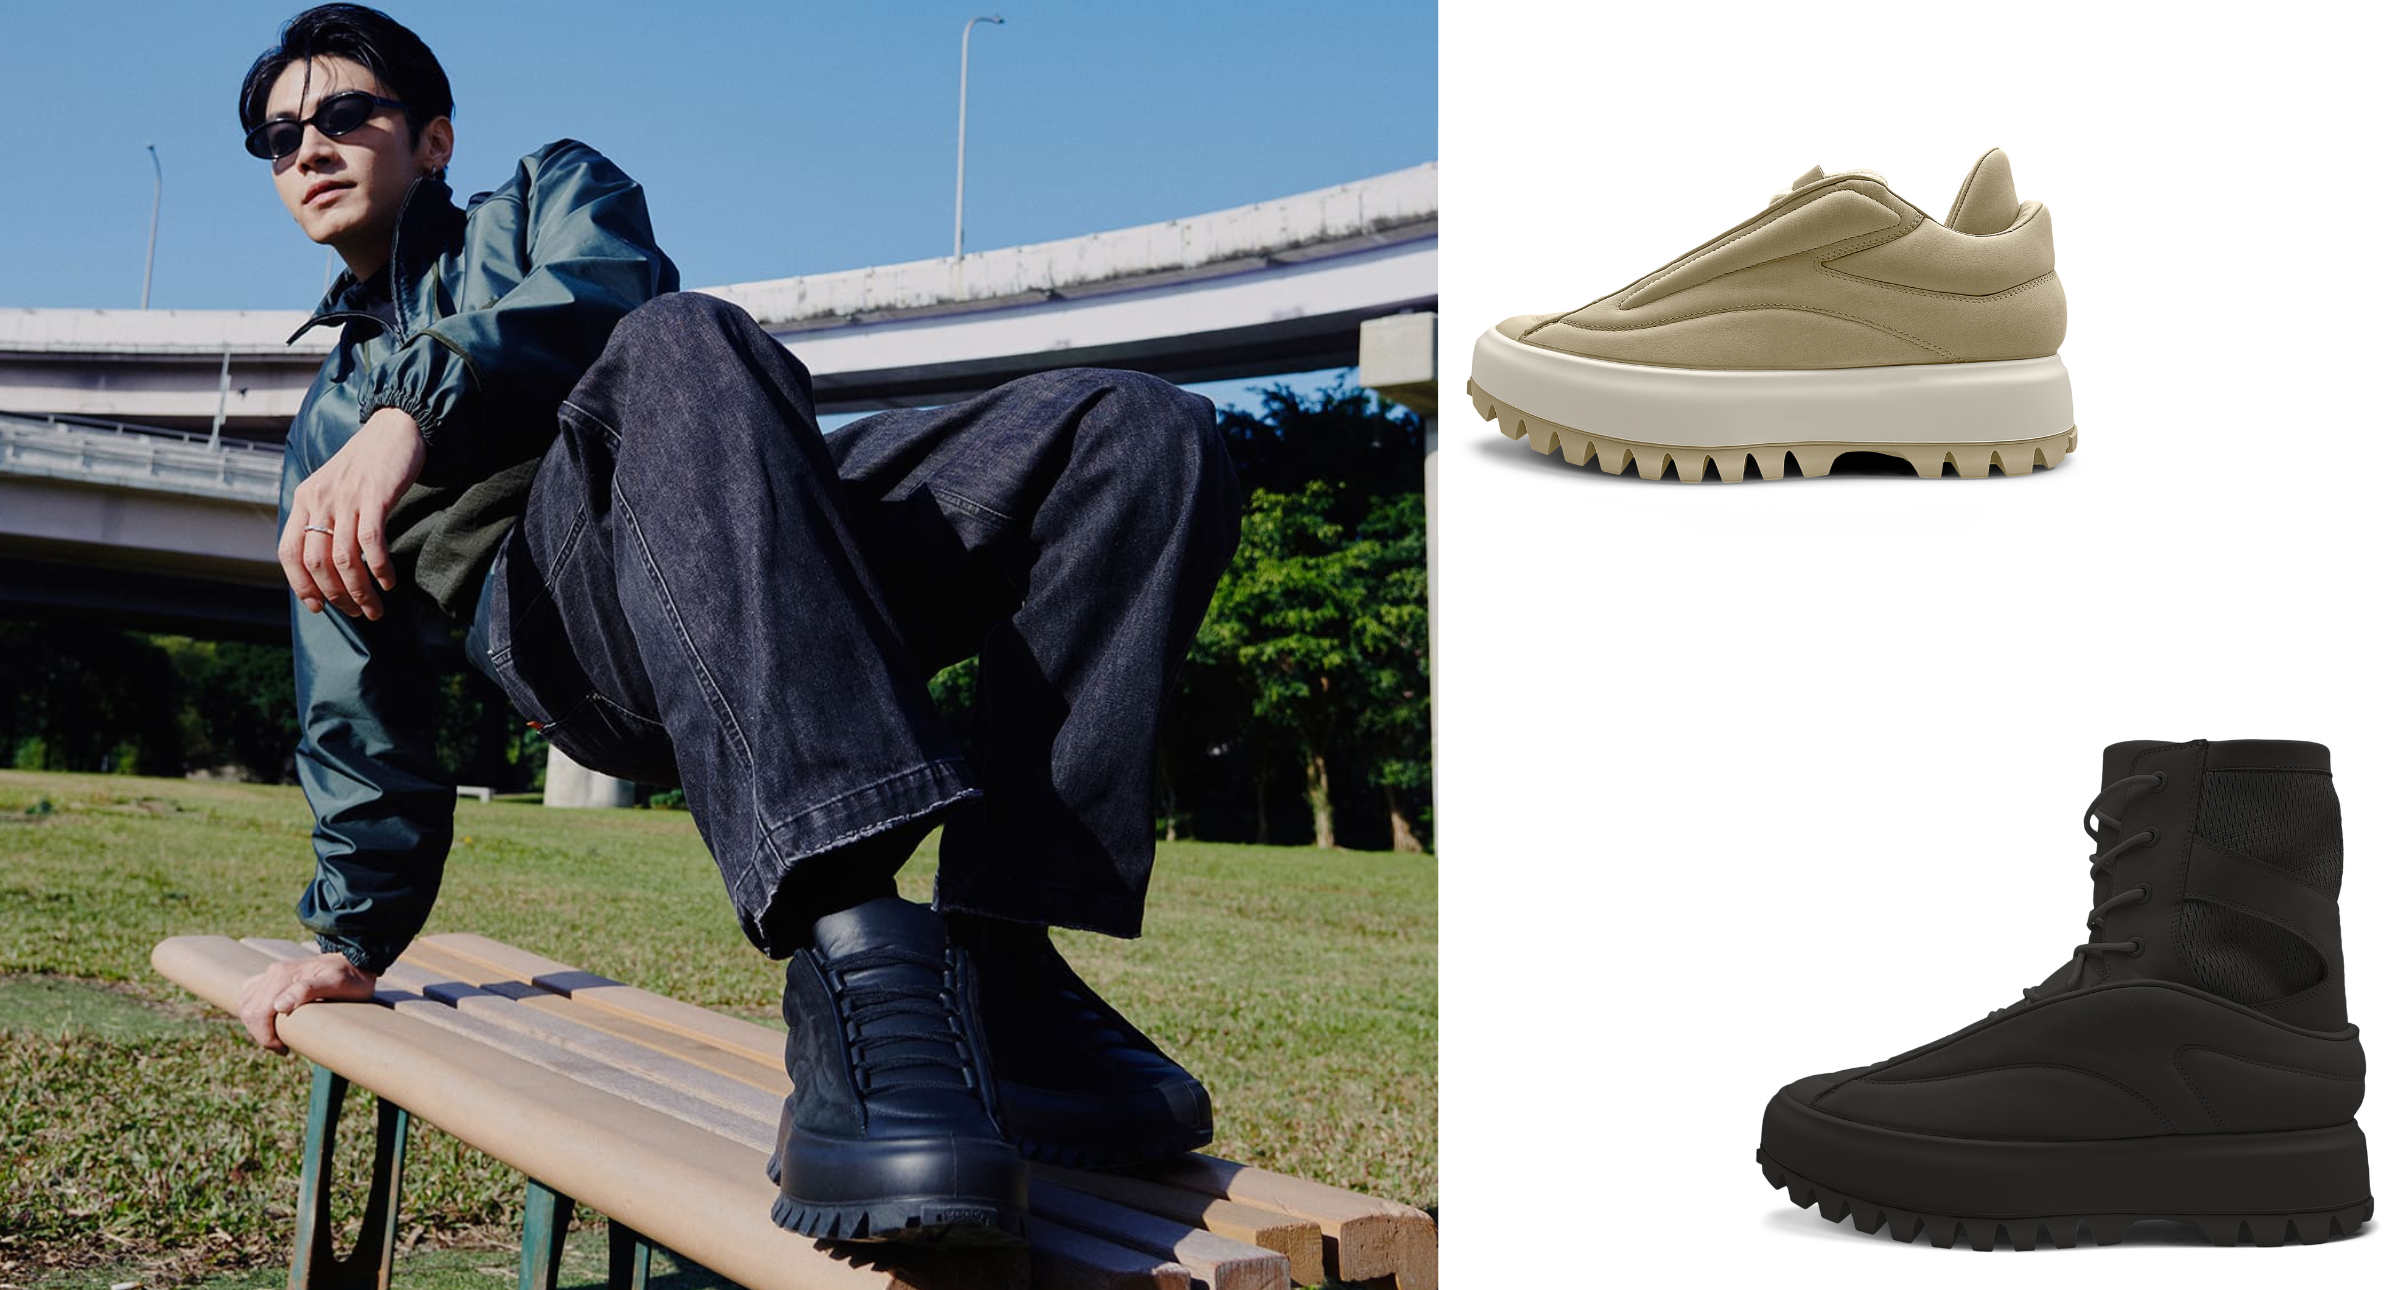 【#Accessory】ECCO聯名系列潮鞋拼接造型兼具時尚，宋柏緯率性演繹街頭潮流風